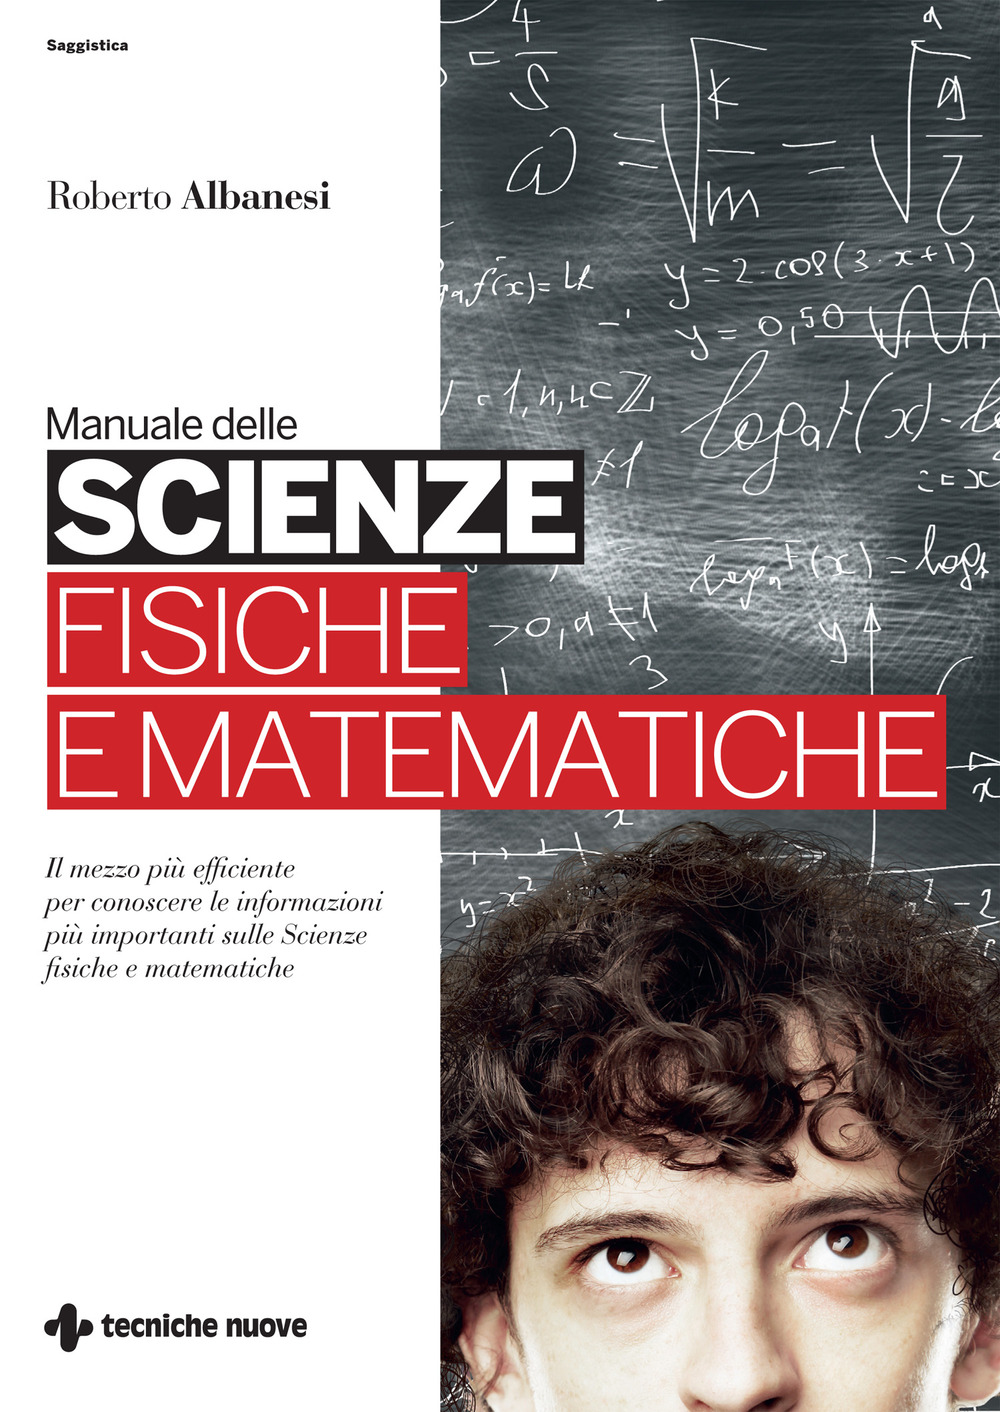 Image of Manuale delle scienze fisiche e matematiche